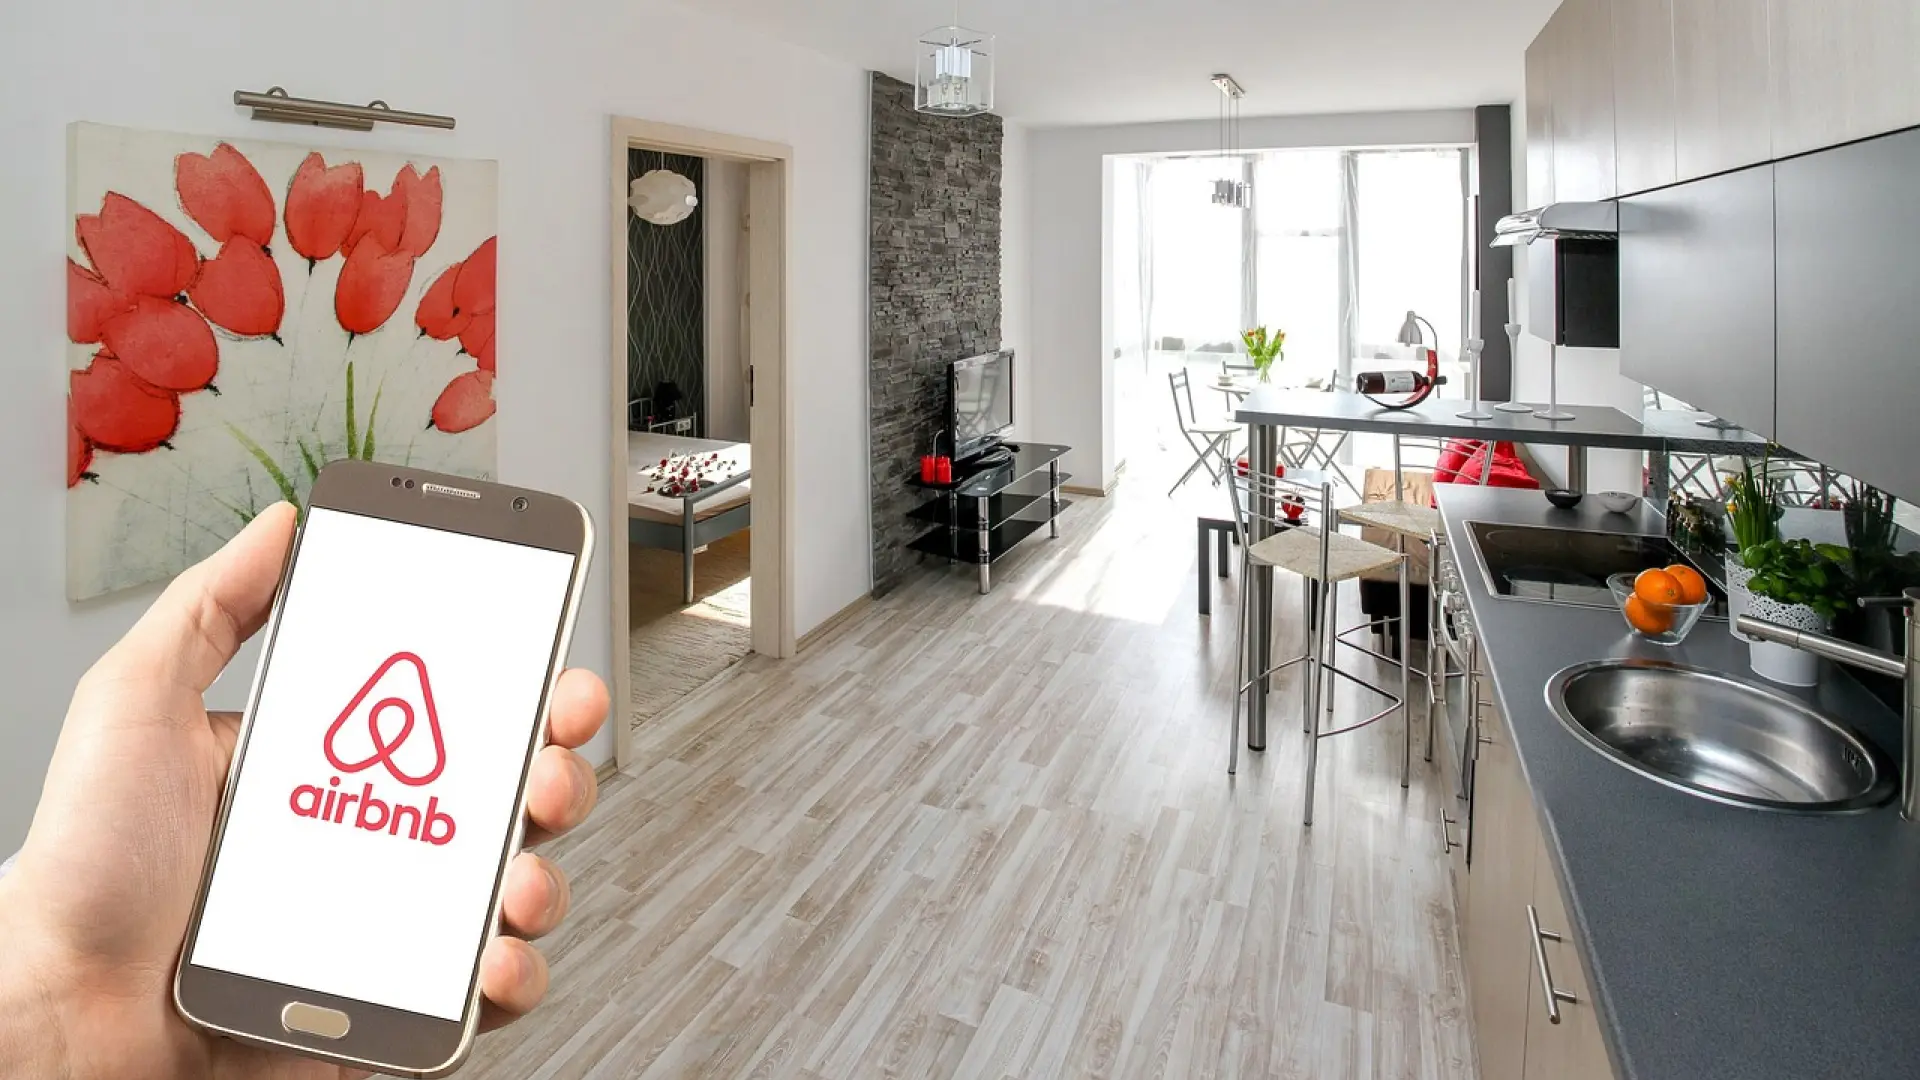 Airbnb incorpora dos nuevas funciones que mejoran las reversas de alojamiento con el anfitrión